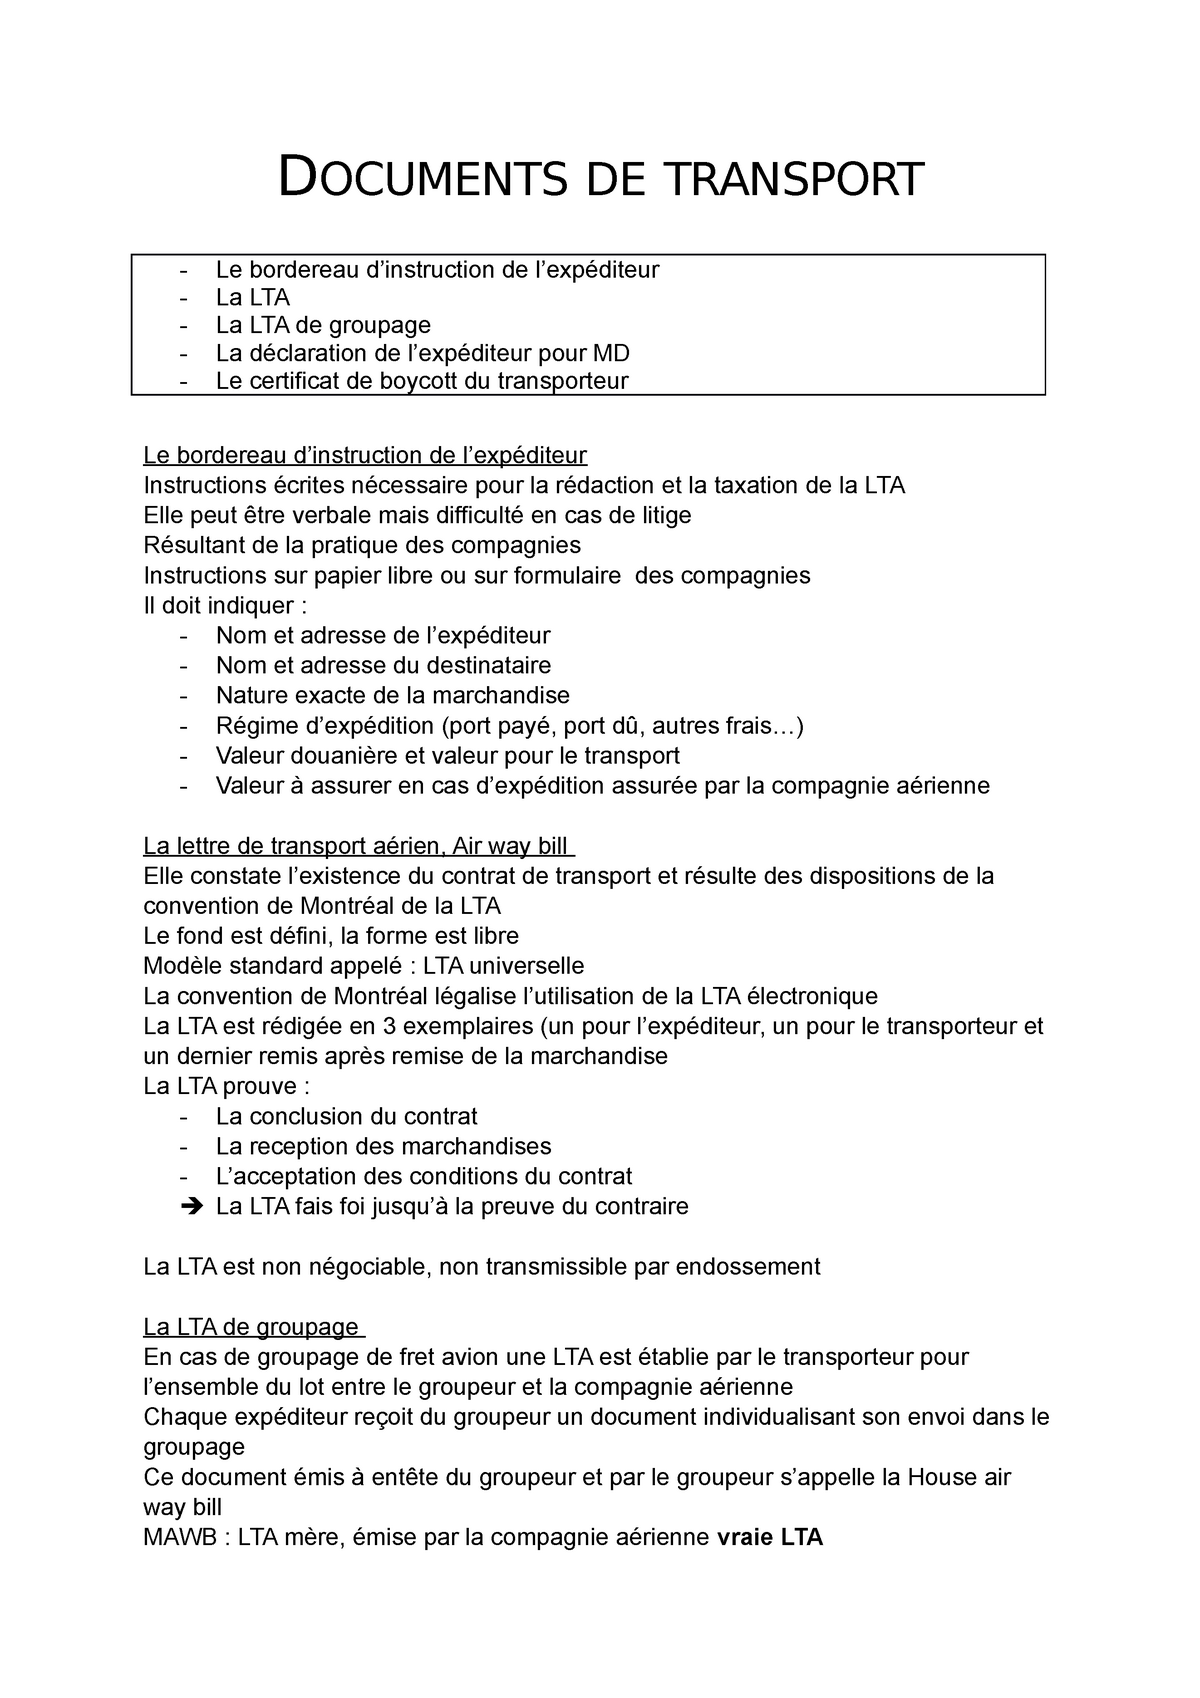 Documents de transport  DOCUMENTS DE TRANSPORT Le bordereau d